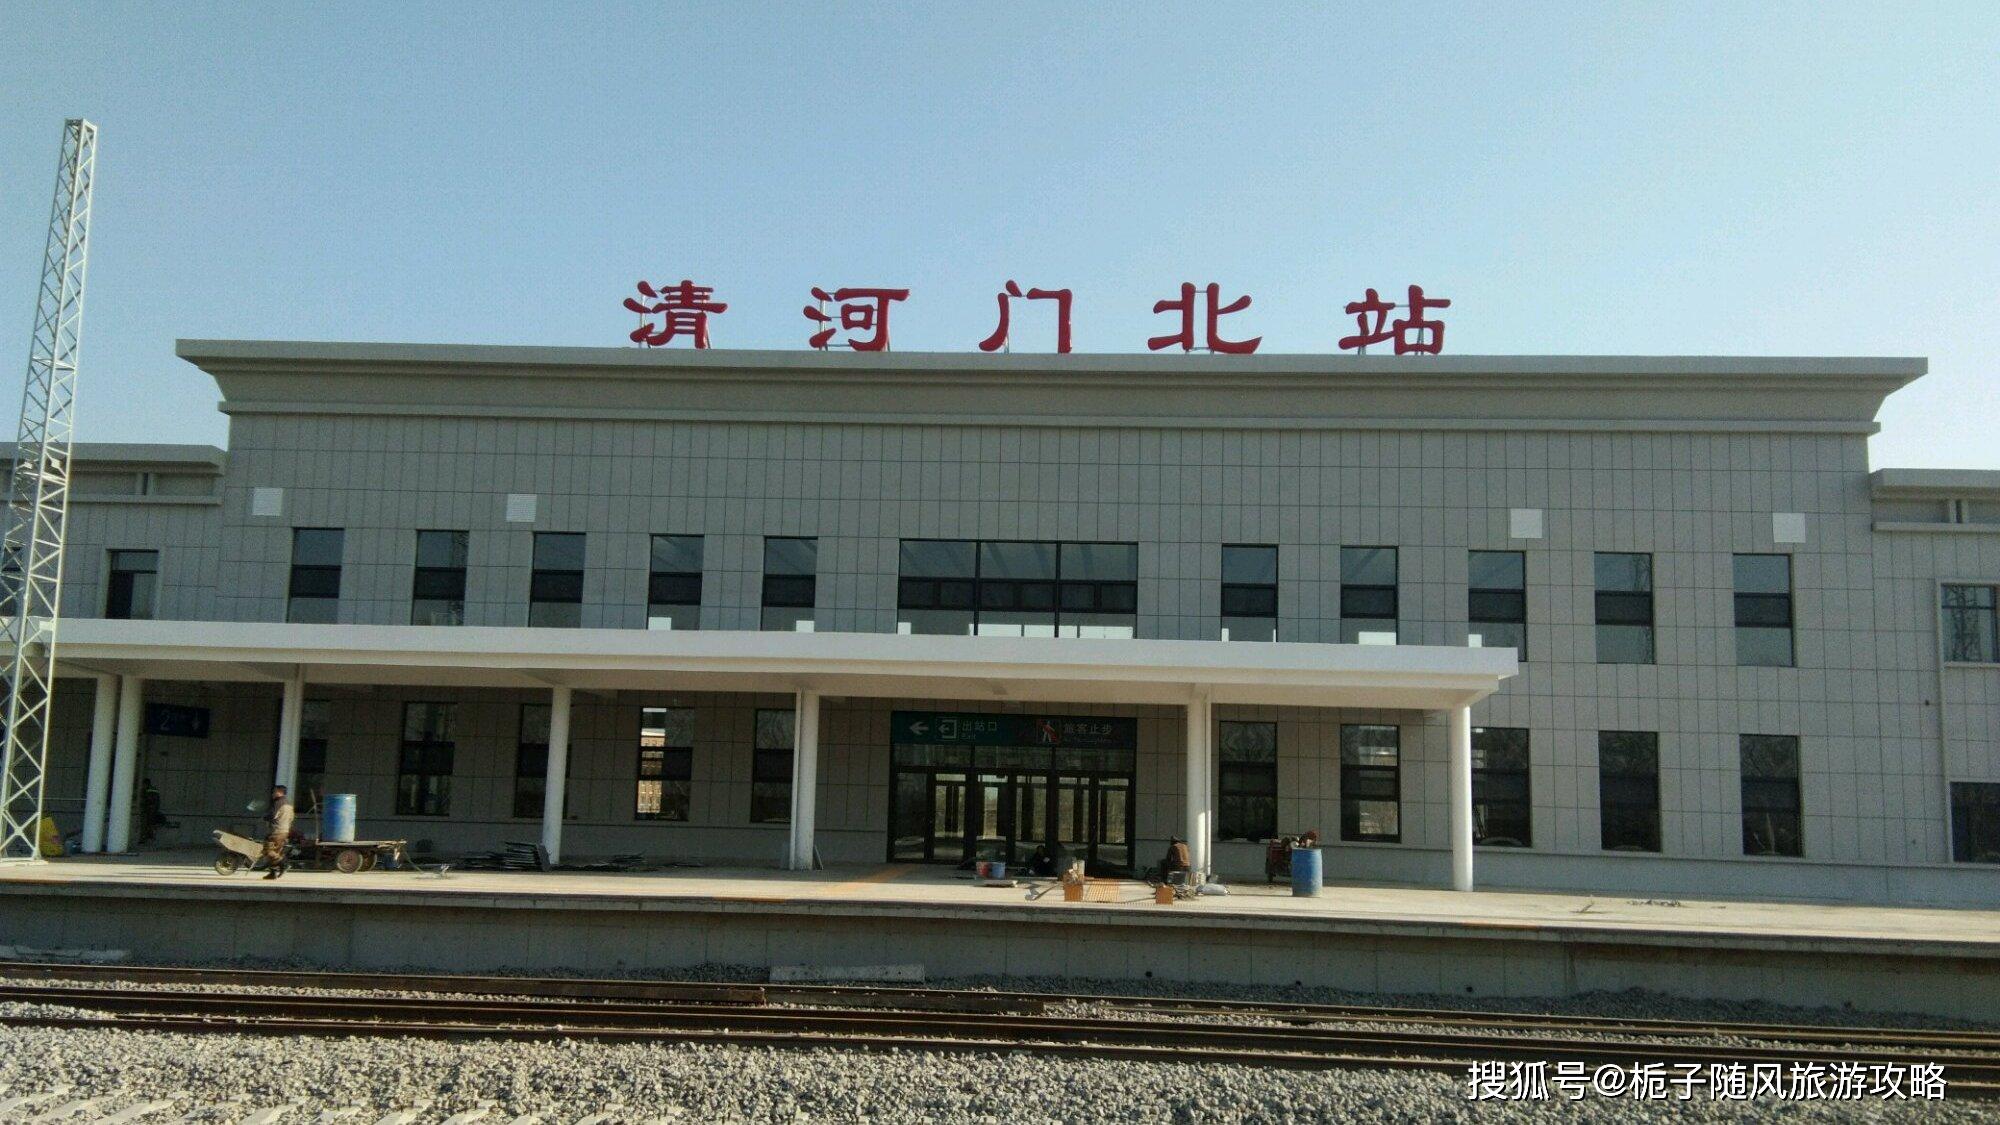 原创阜新市清河门区主要的两座火车站一览